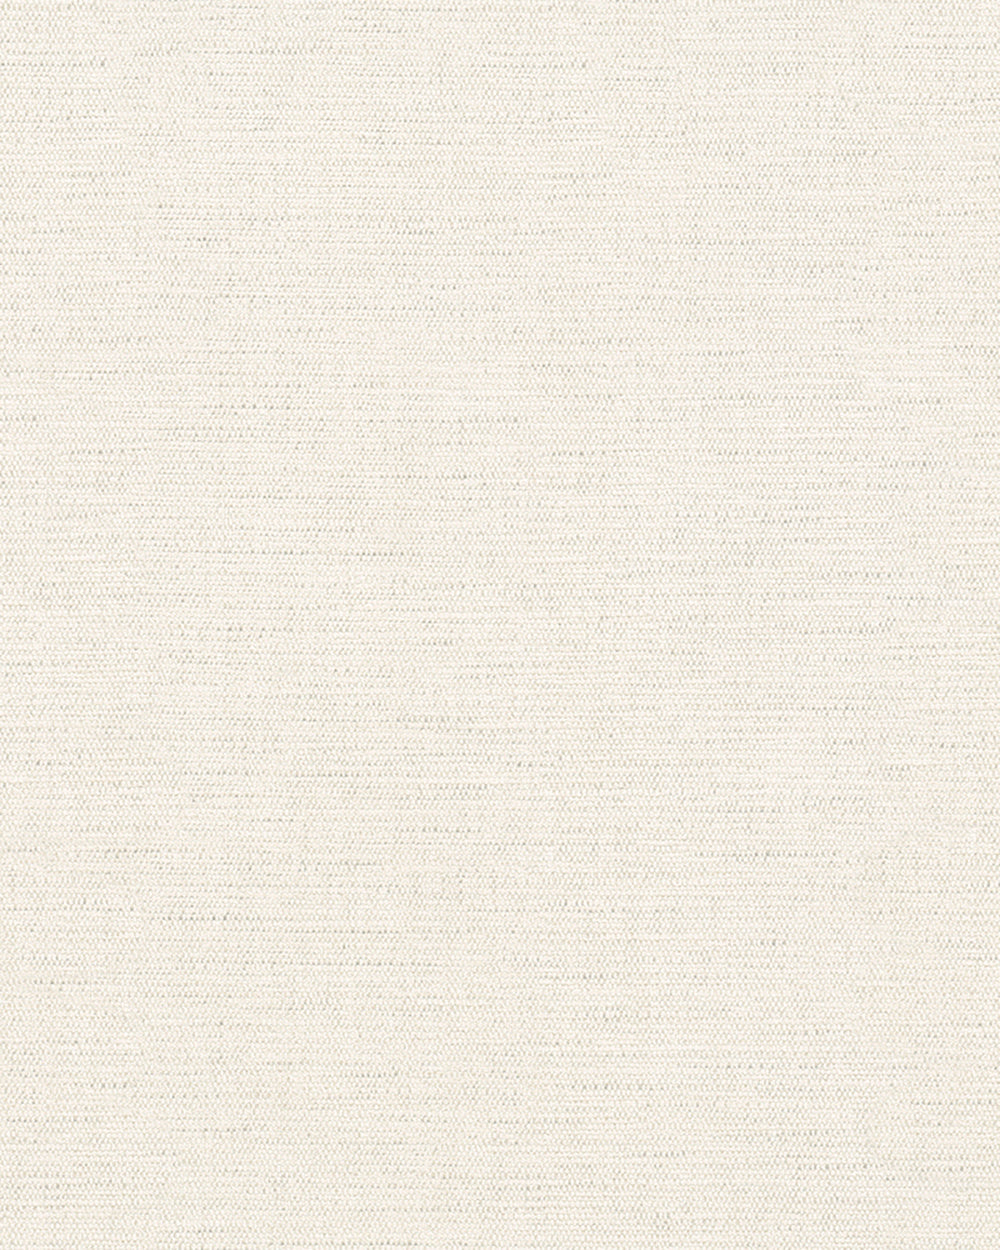 Avalon - Faux Grasscloth plain wallpaper Marburg Roll Cream  31611